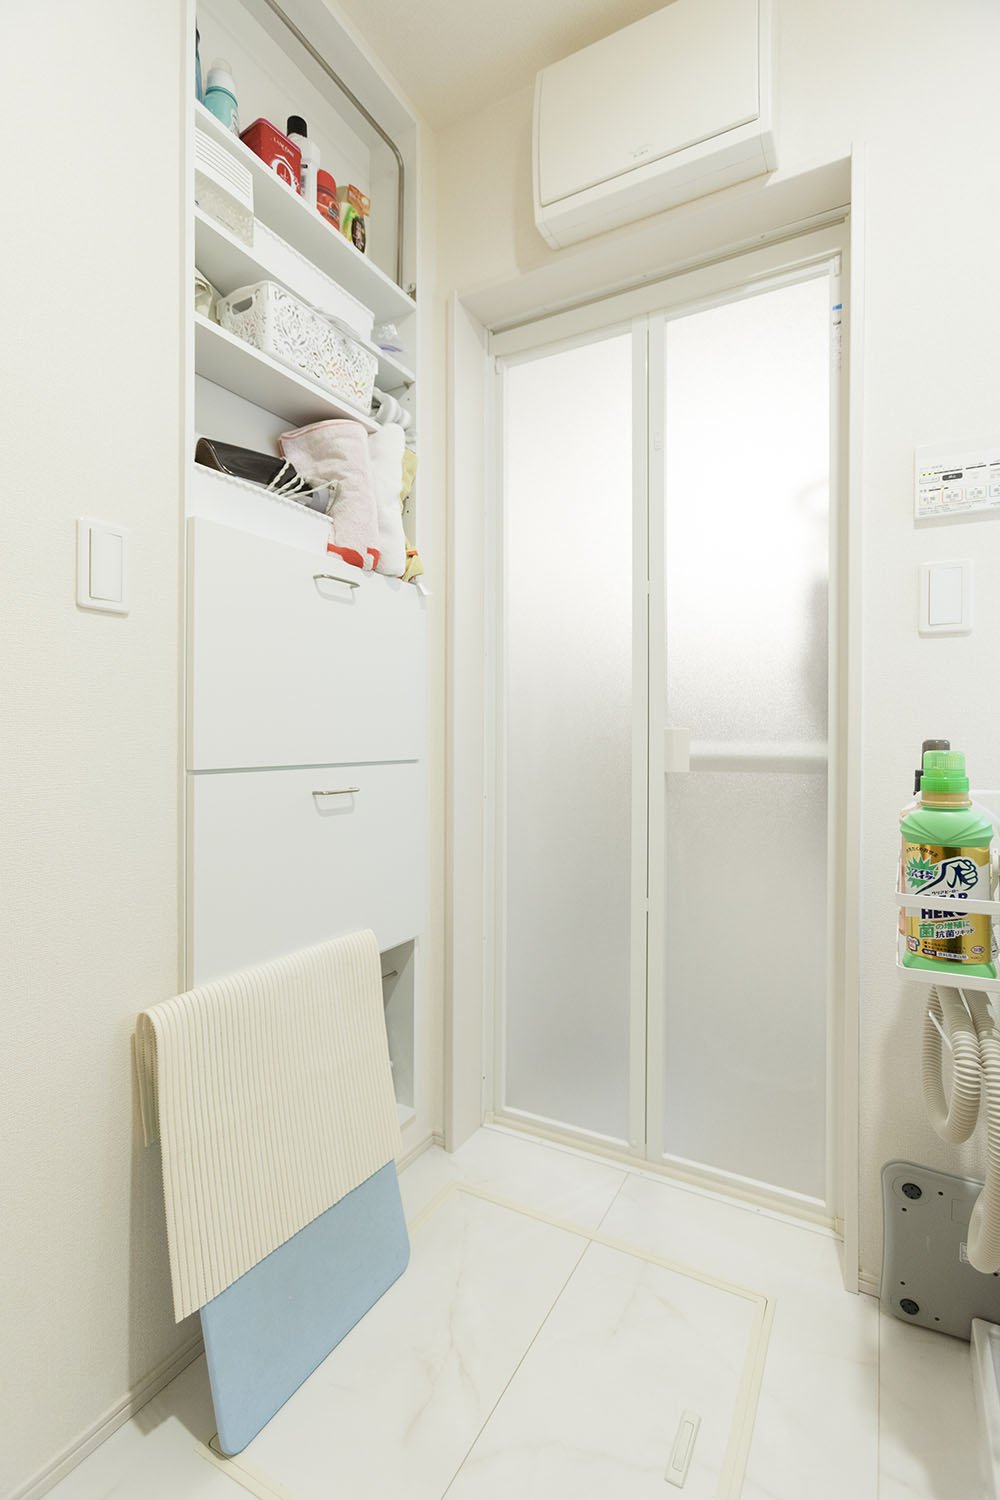 洗面所の薄型壁収納には、洗剤やタオルをスタイリッシュにストックできます。